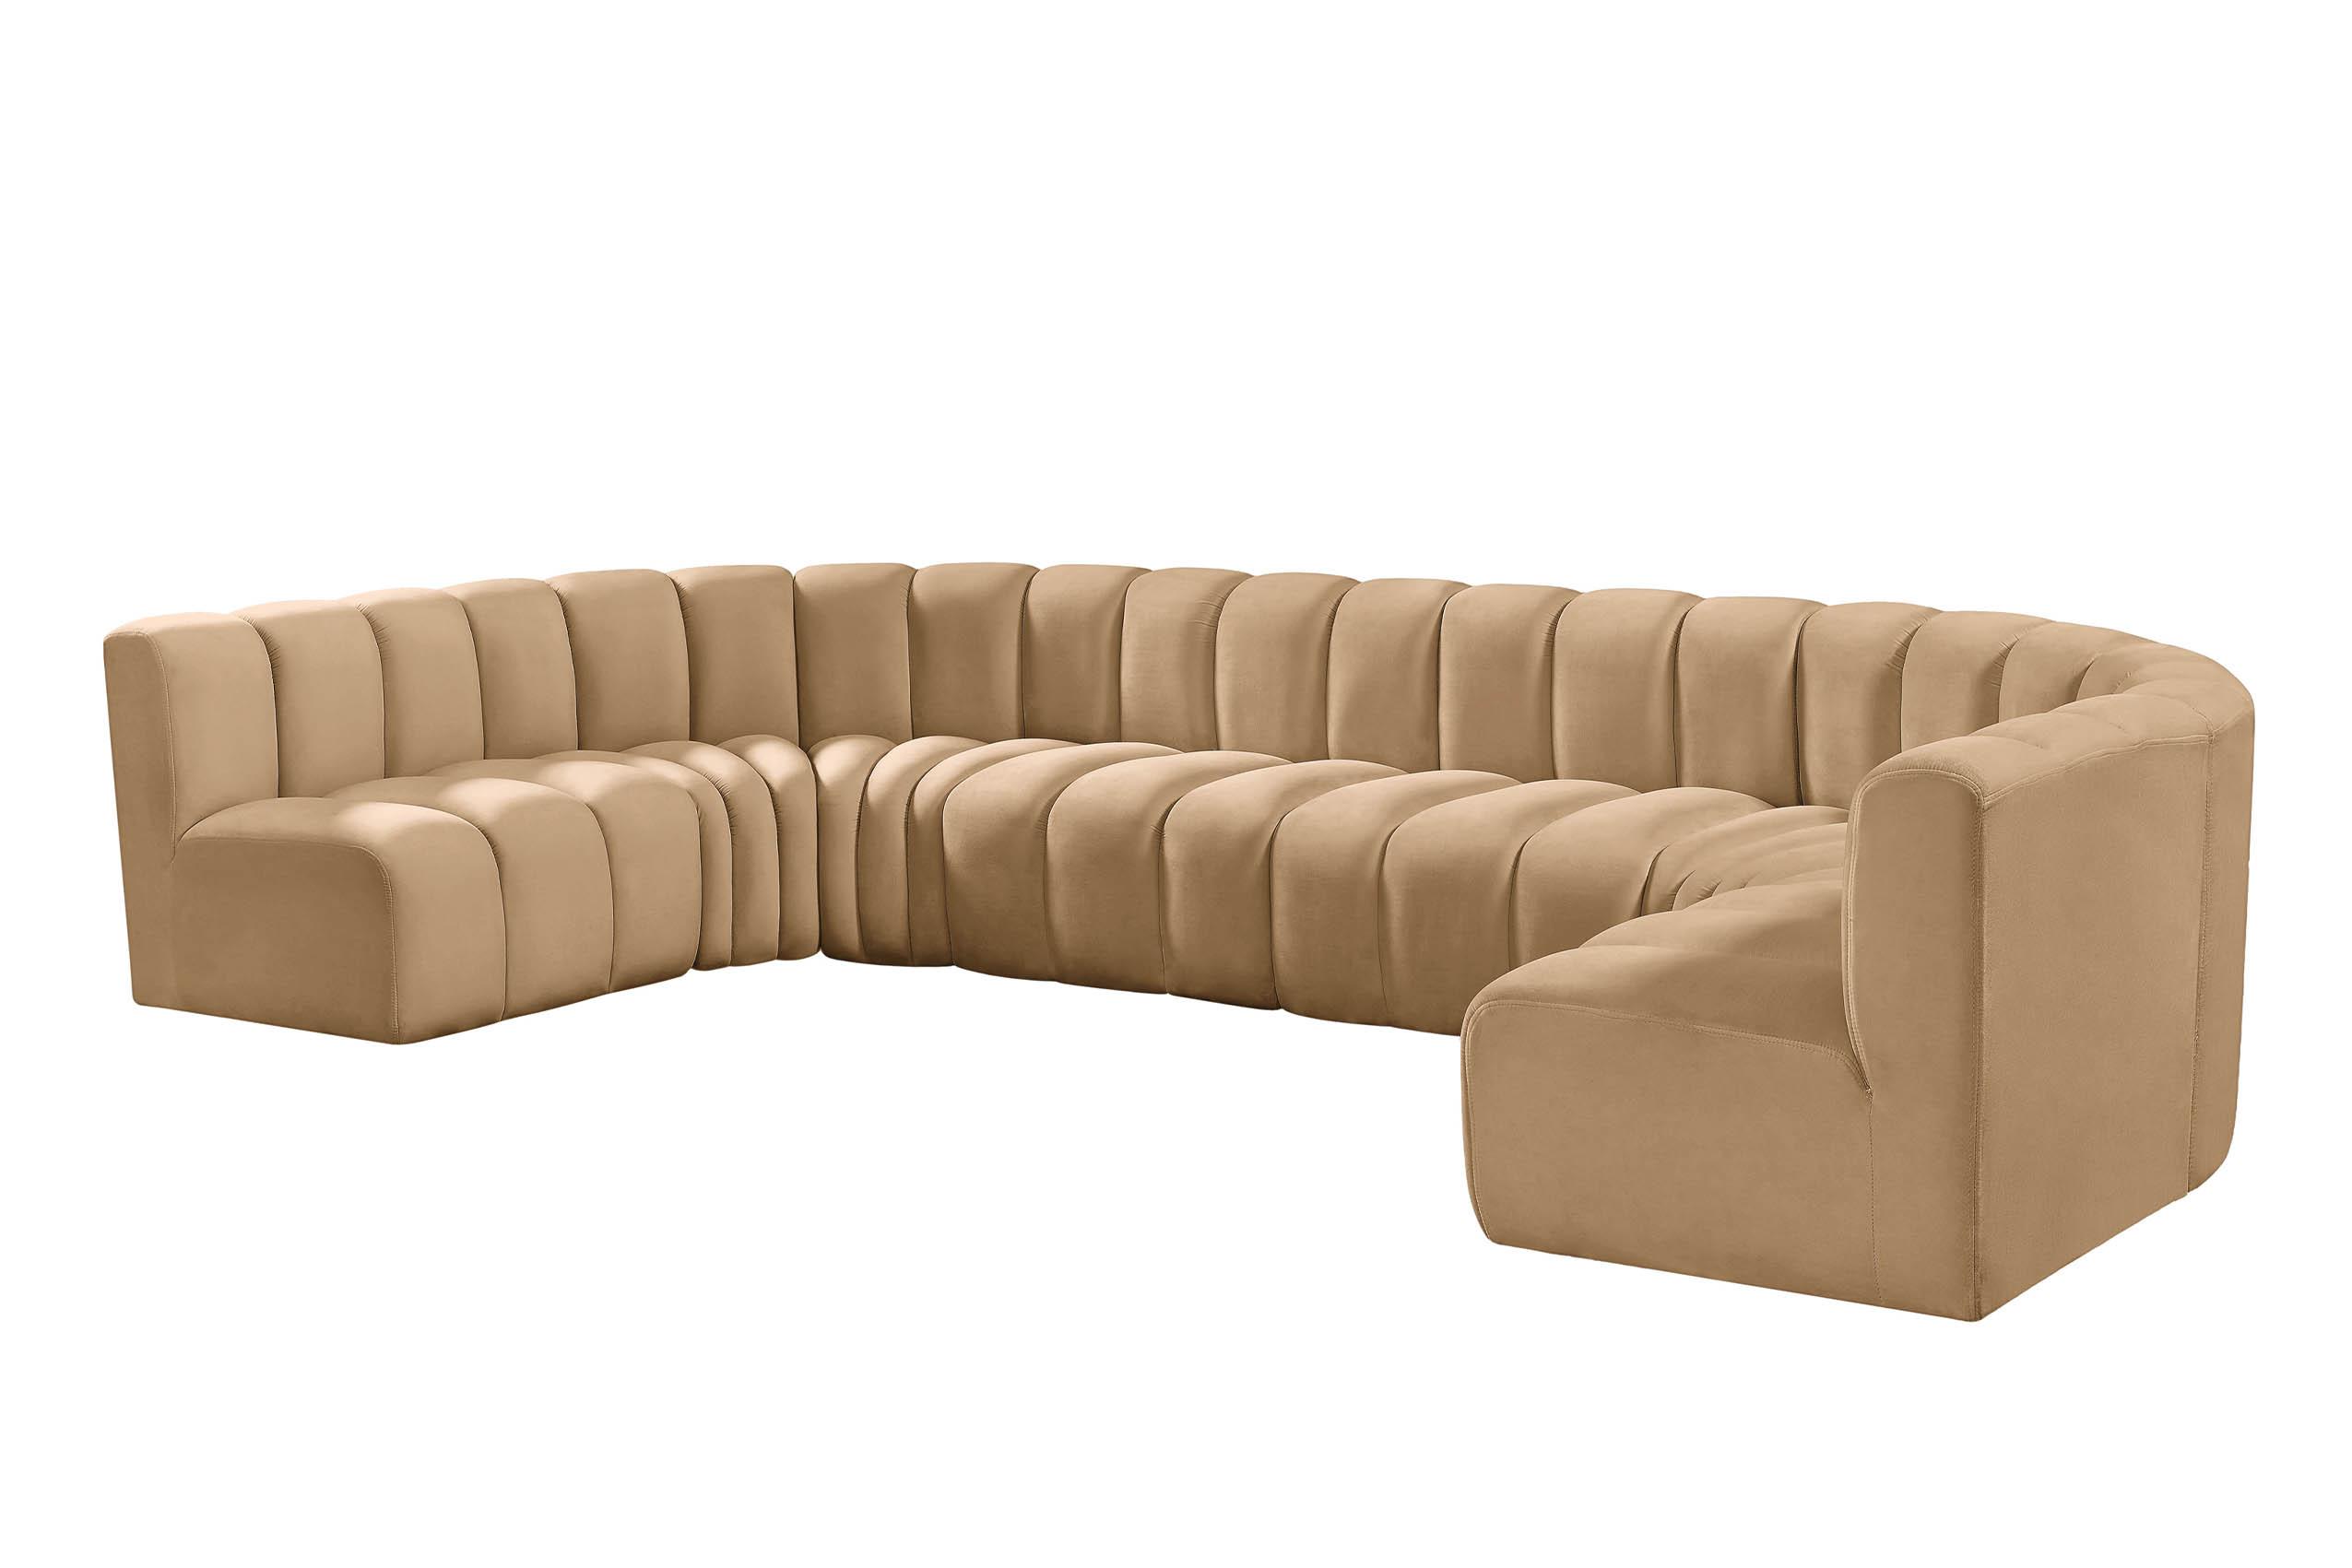 

    
103Camel-S8A Meridian Furniture Modular Sectional Sofa
